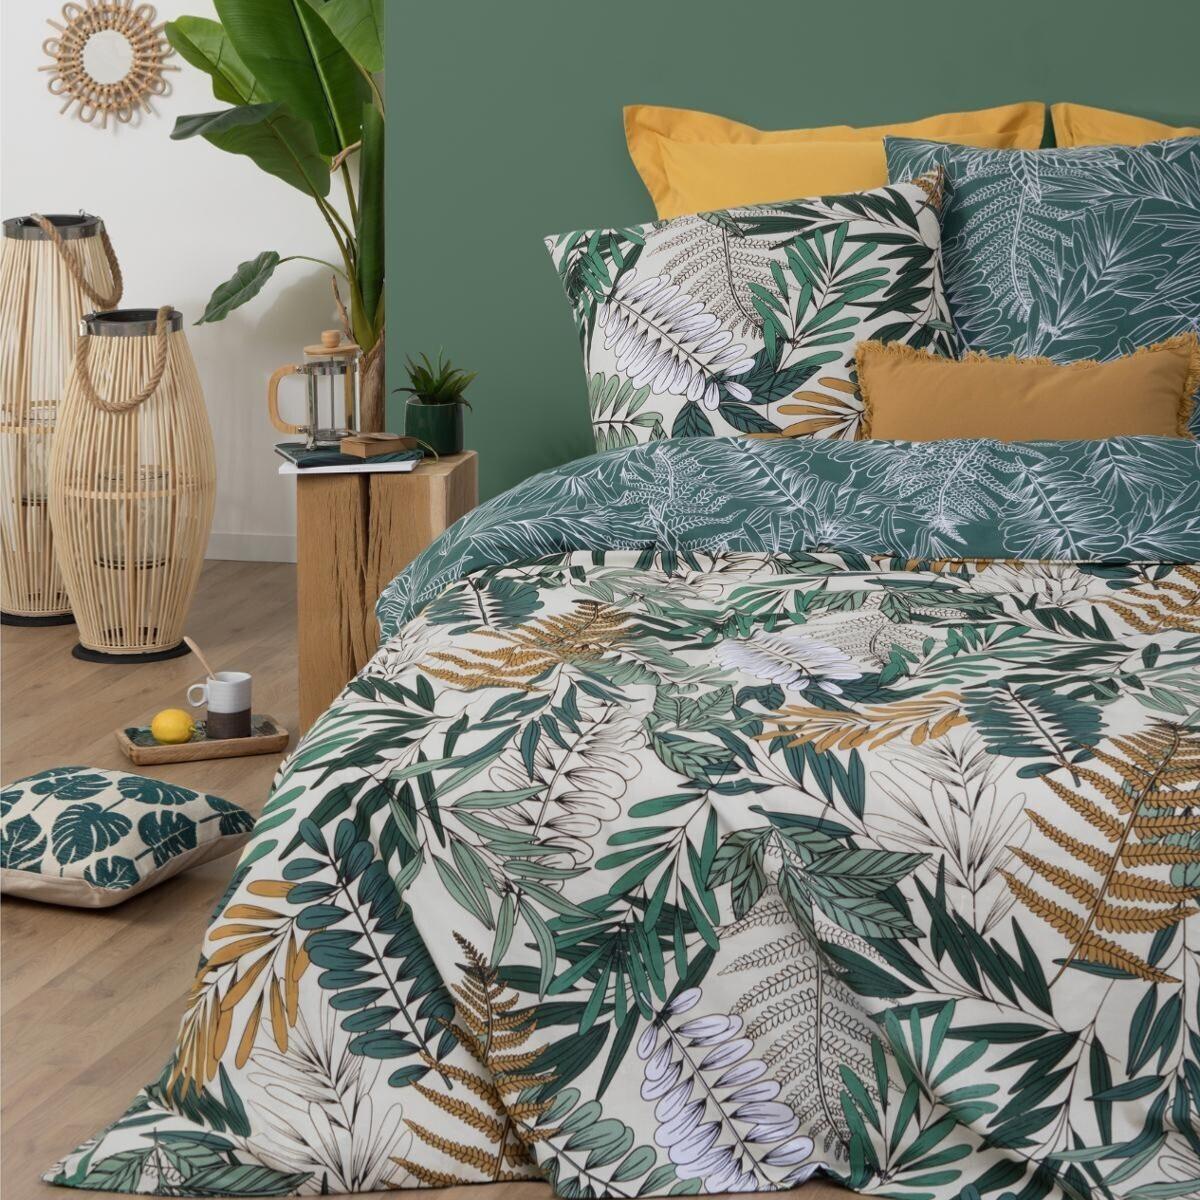 Parure de lit au style tropical coton vert olive 240x220 cm